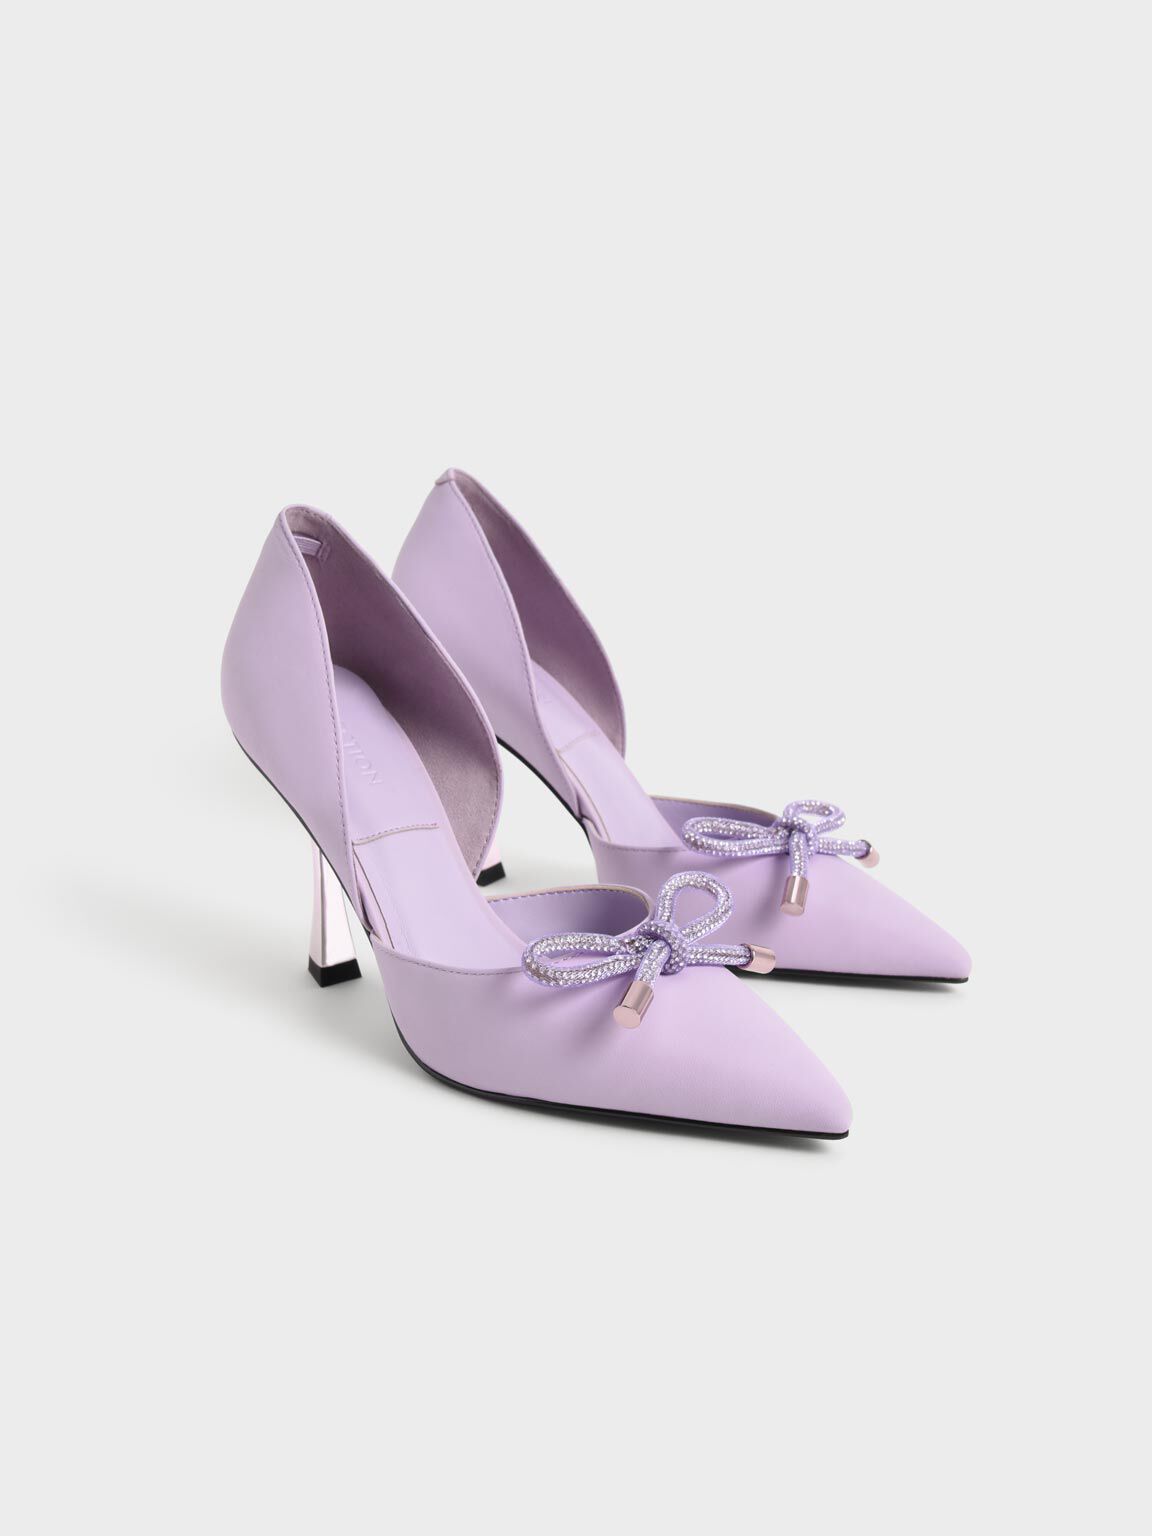 Gem-Embellished Bow-Tie D'Orsay Pumps - Lilac